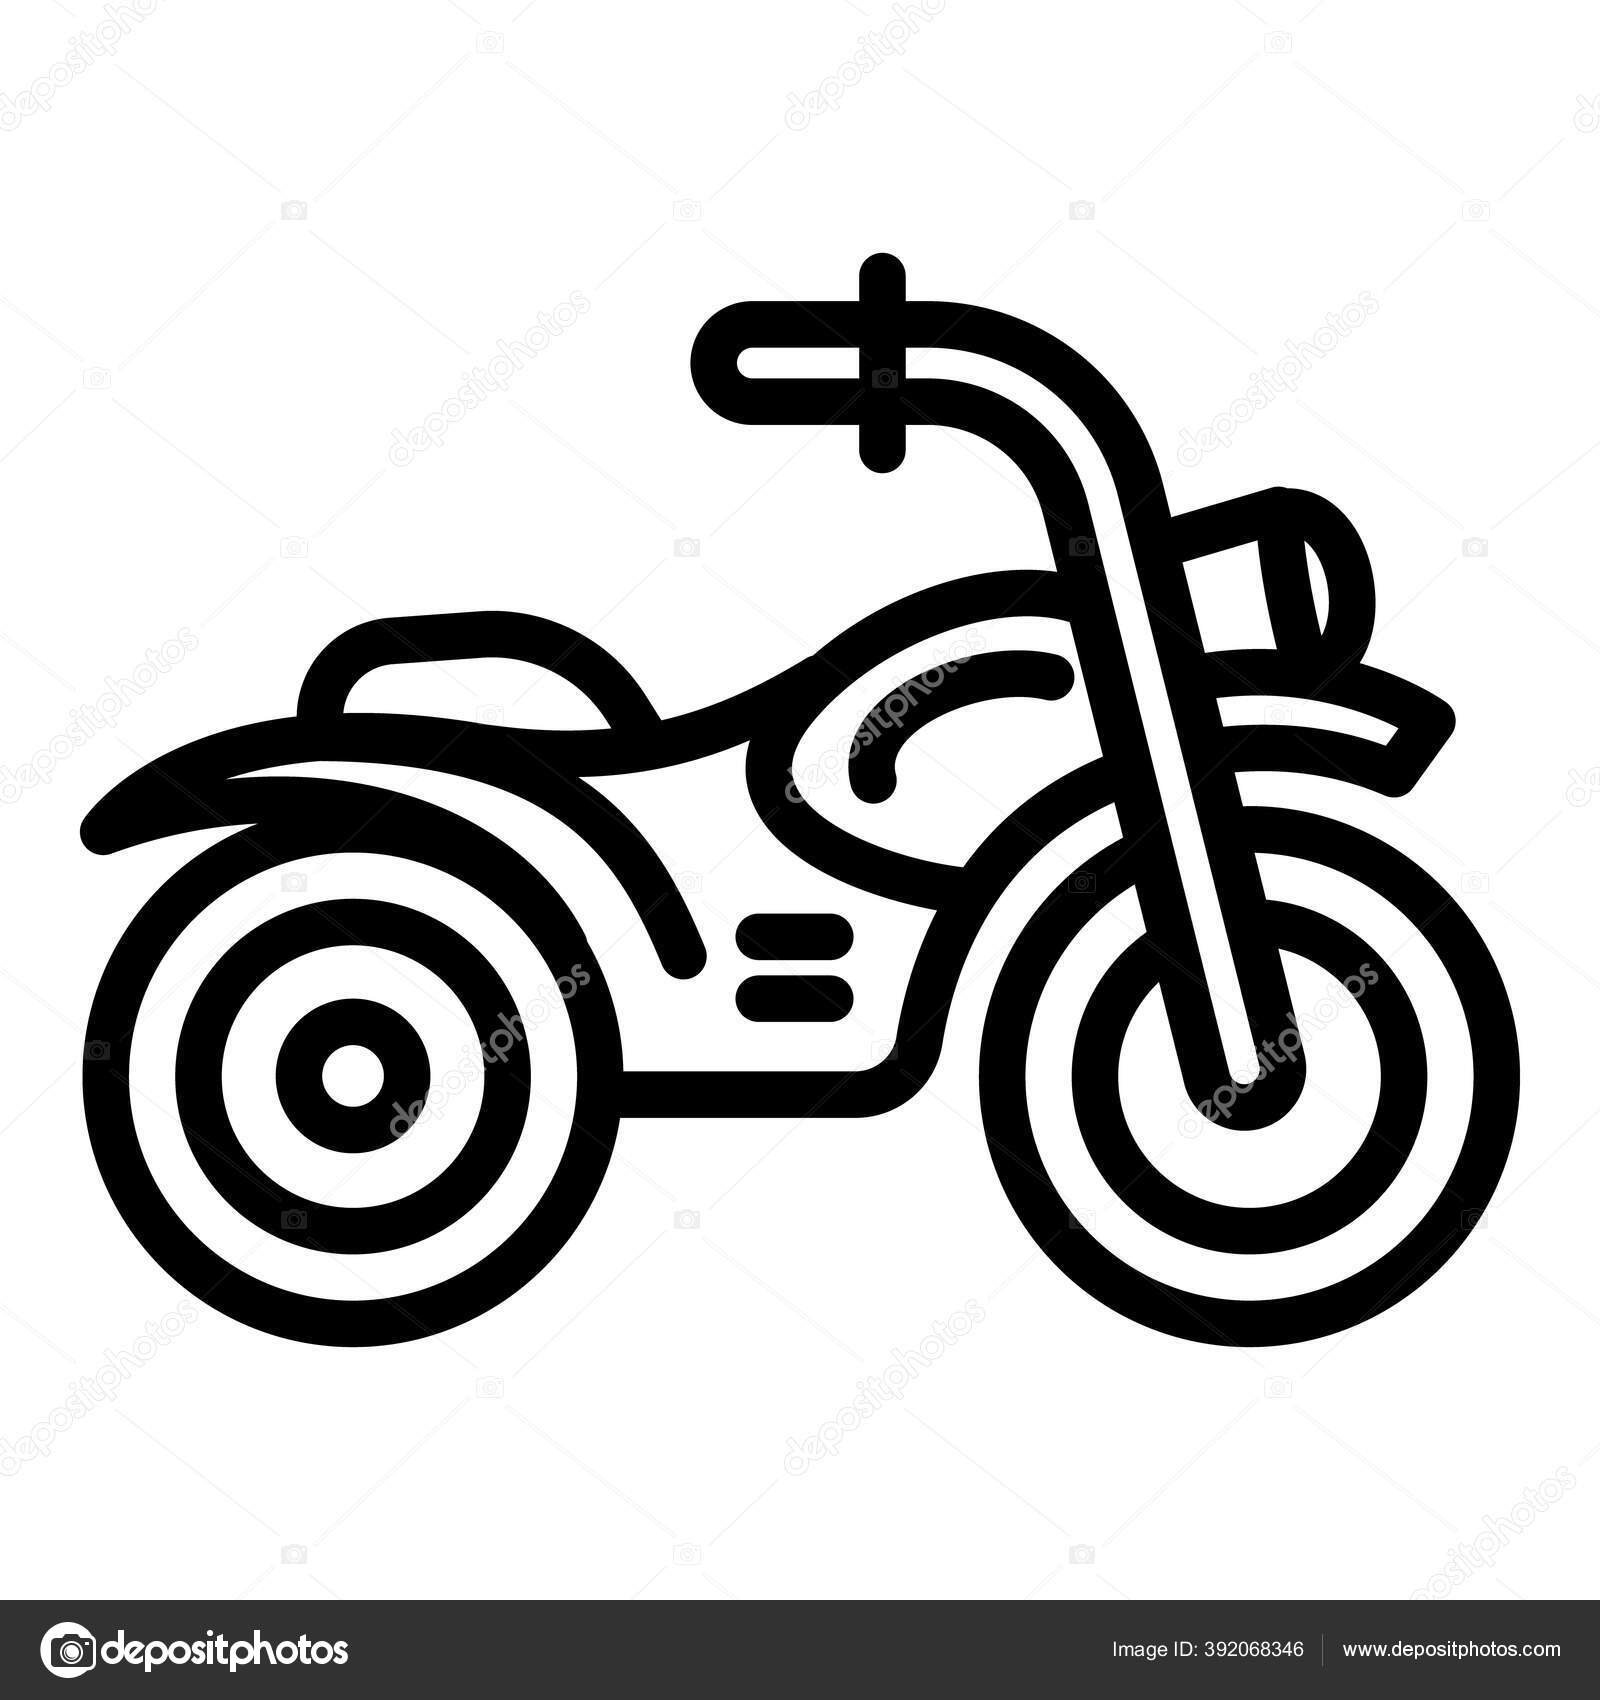 motocross linha arte, motociclista esboço desenho, moto simples